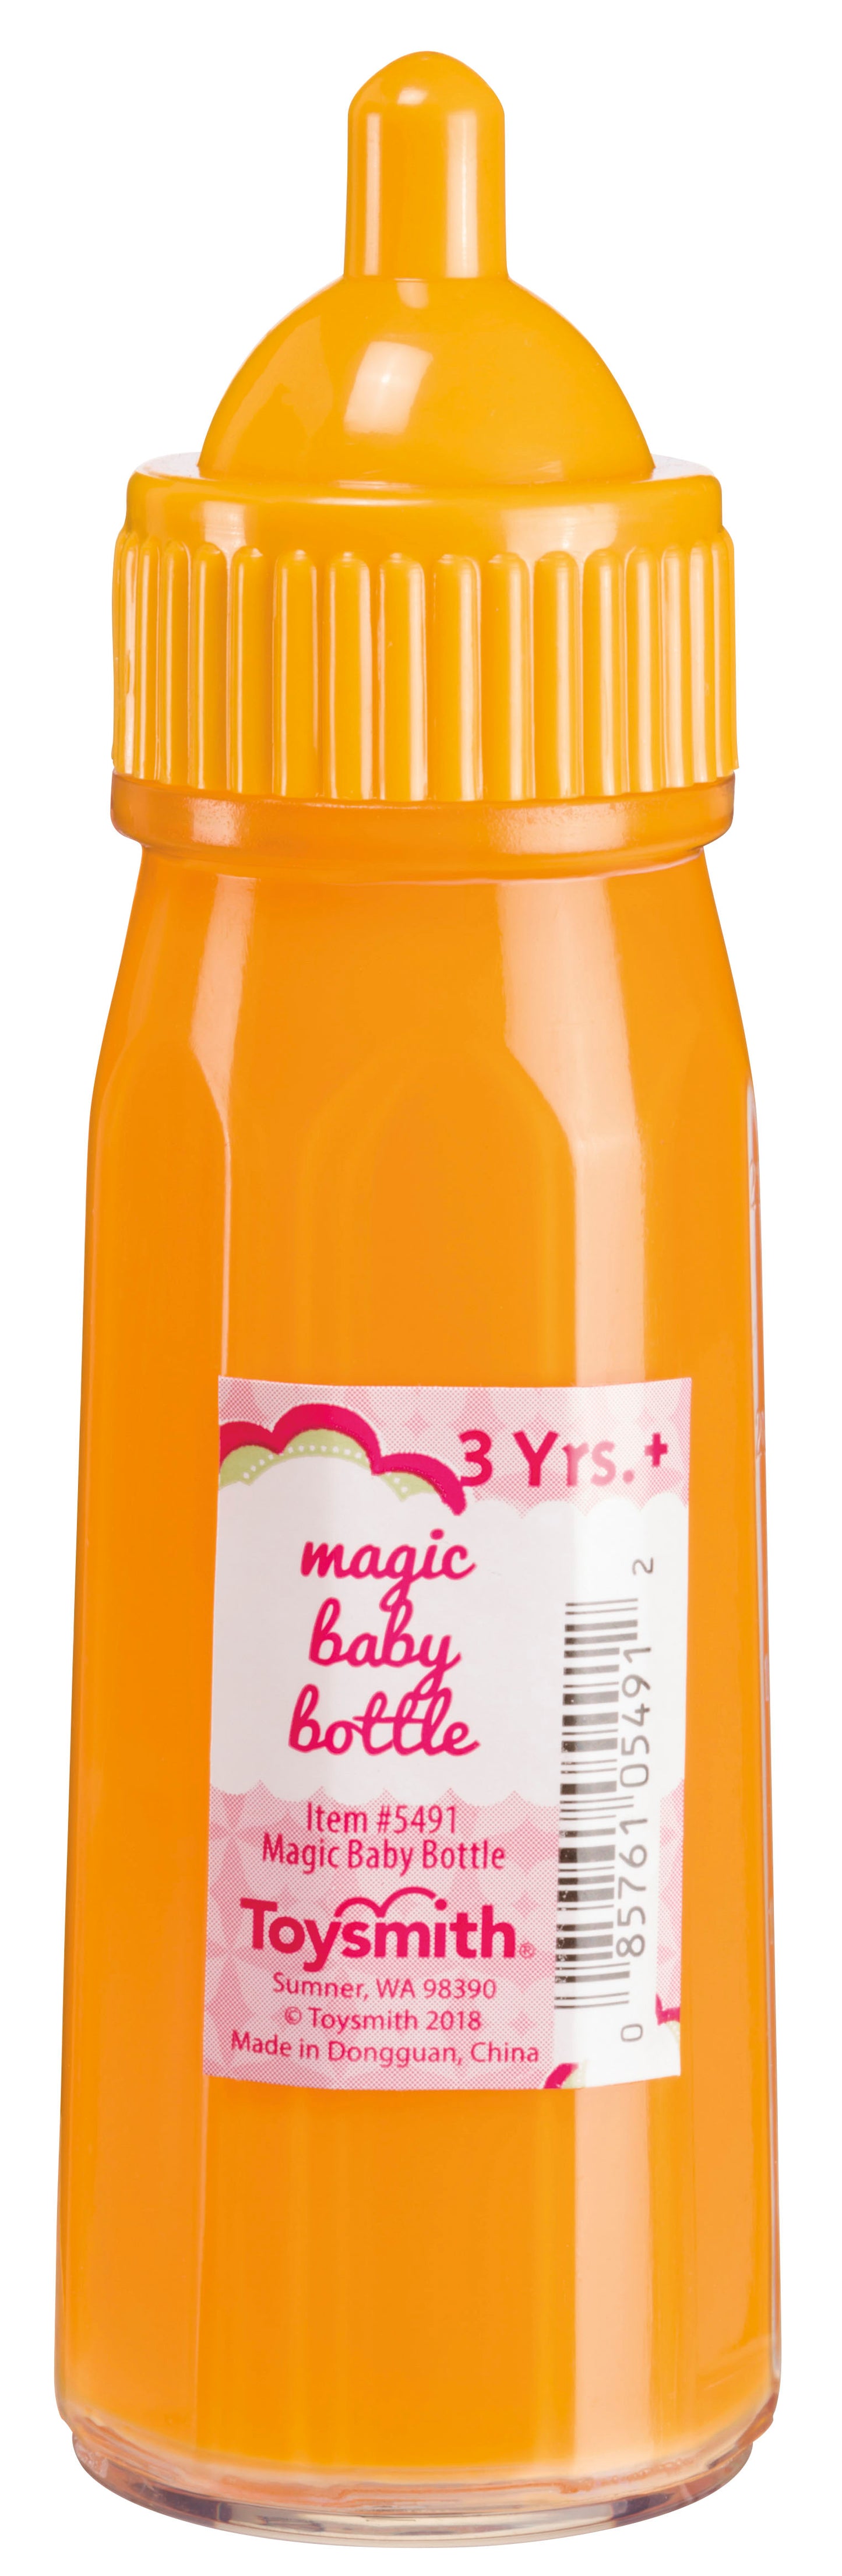 My Sweet Baby Large Magic Baby Bottle